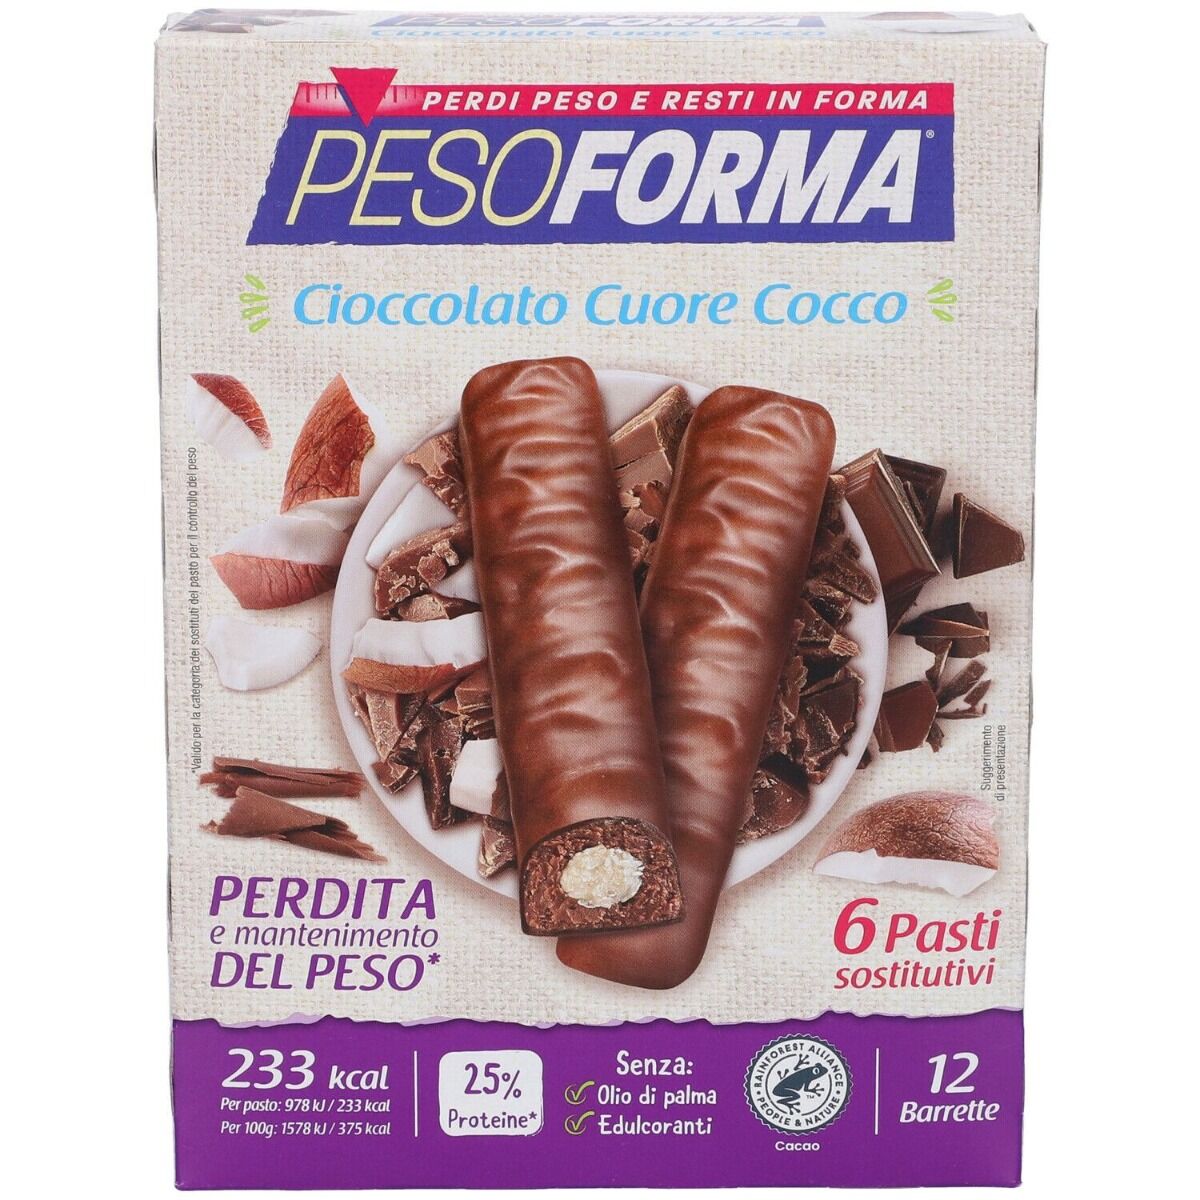 pesoforma pasto sostitutivo barrette al cioccolato cuore gusto cocco 12 pezzi